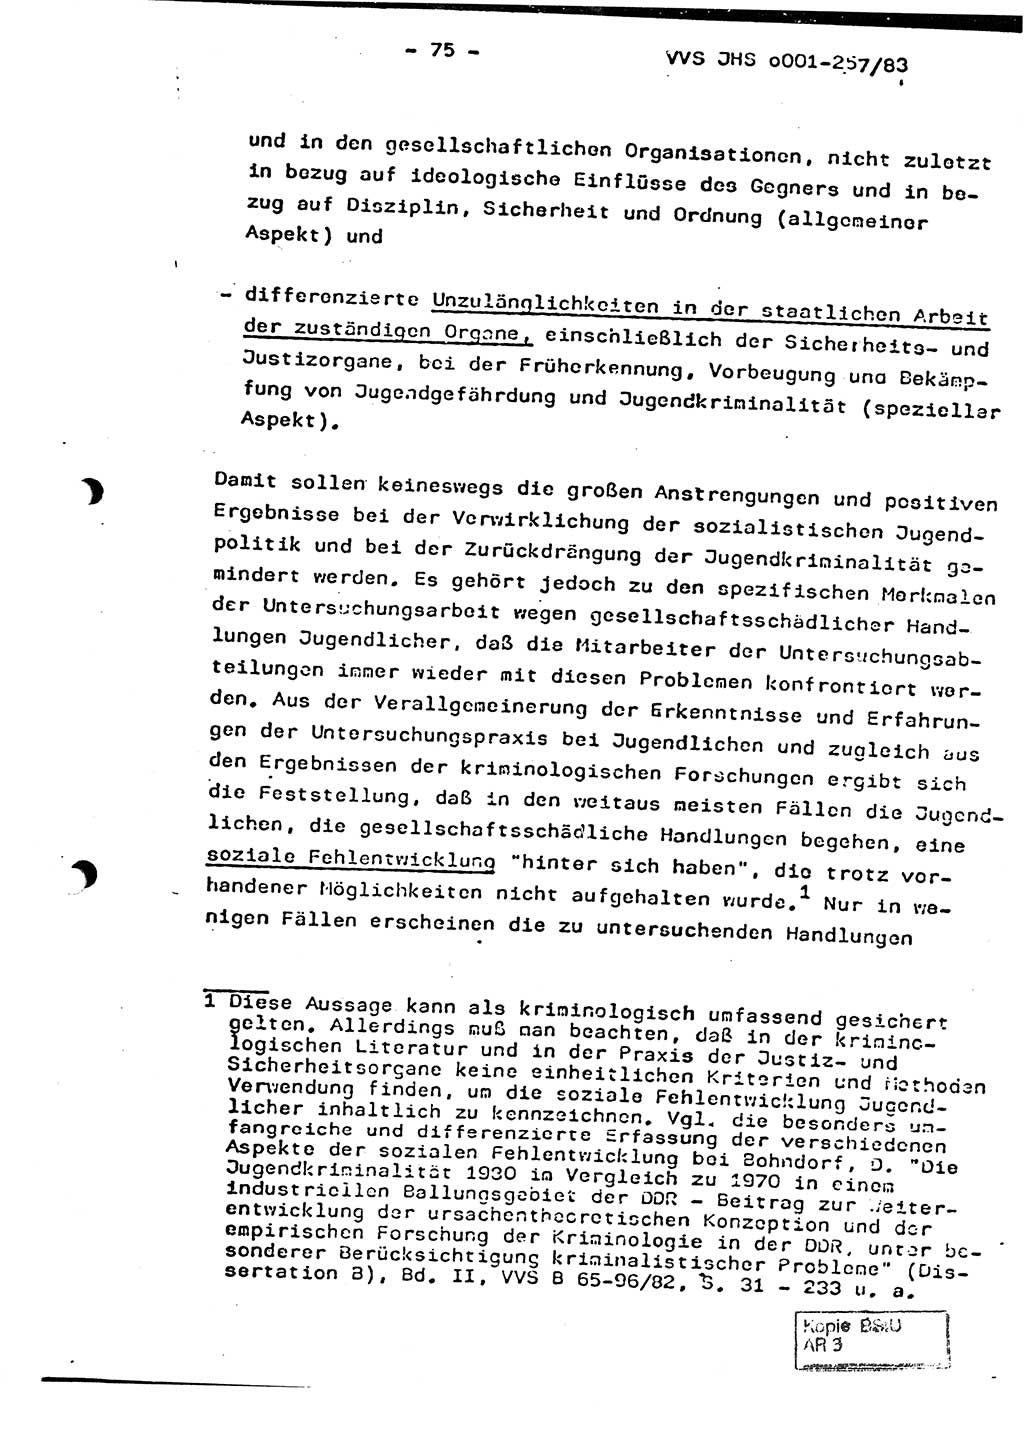 Dissertation, Oberst Helmut Lubas (BV Mdg.), Oberstleutnant Manfred Eschberger (HA IX), Oberleutnant Hans-Jürgen Ludwig (JHS), Ministerium für Staatssicherheit (MfS) [Deutsche Demokratische Republik (DDR)], Juristische Hochschule (JHS), Vertrauliche Verschlußsache (VVS) o001-257/83, Potsdam 1983, Seite 75 (Diss. MfS DDR JHS VVS o001-257/83 1983, S. 75)